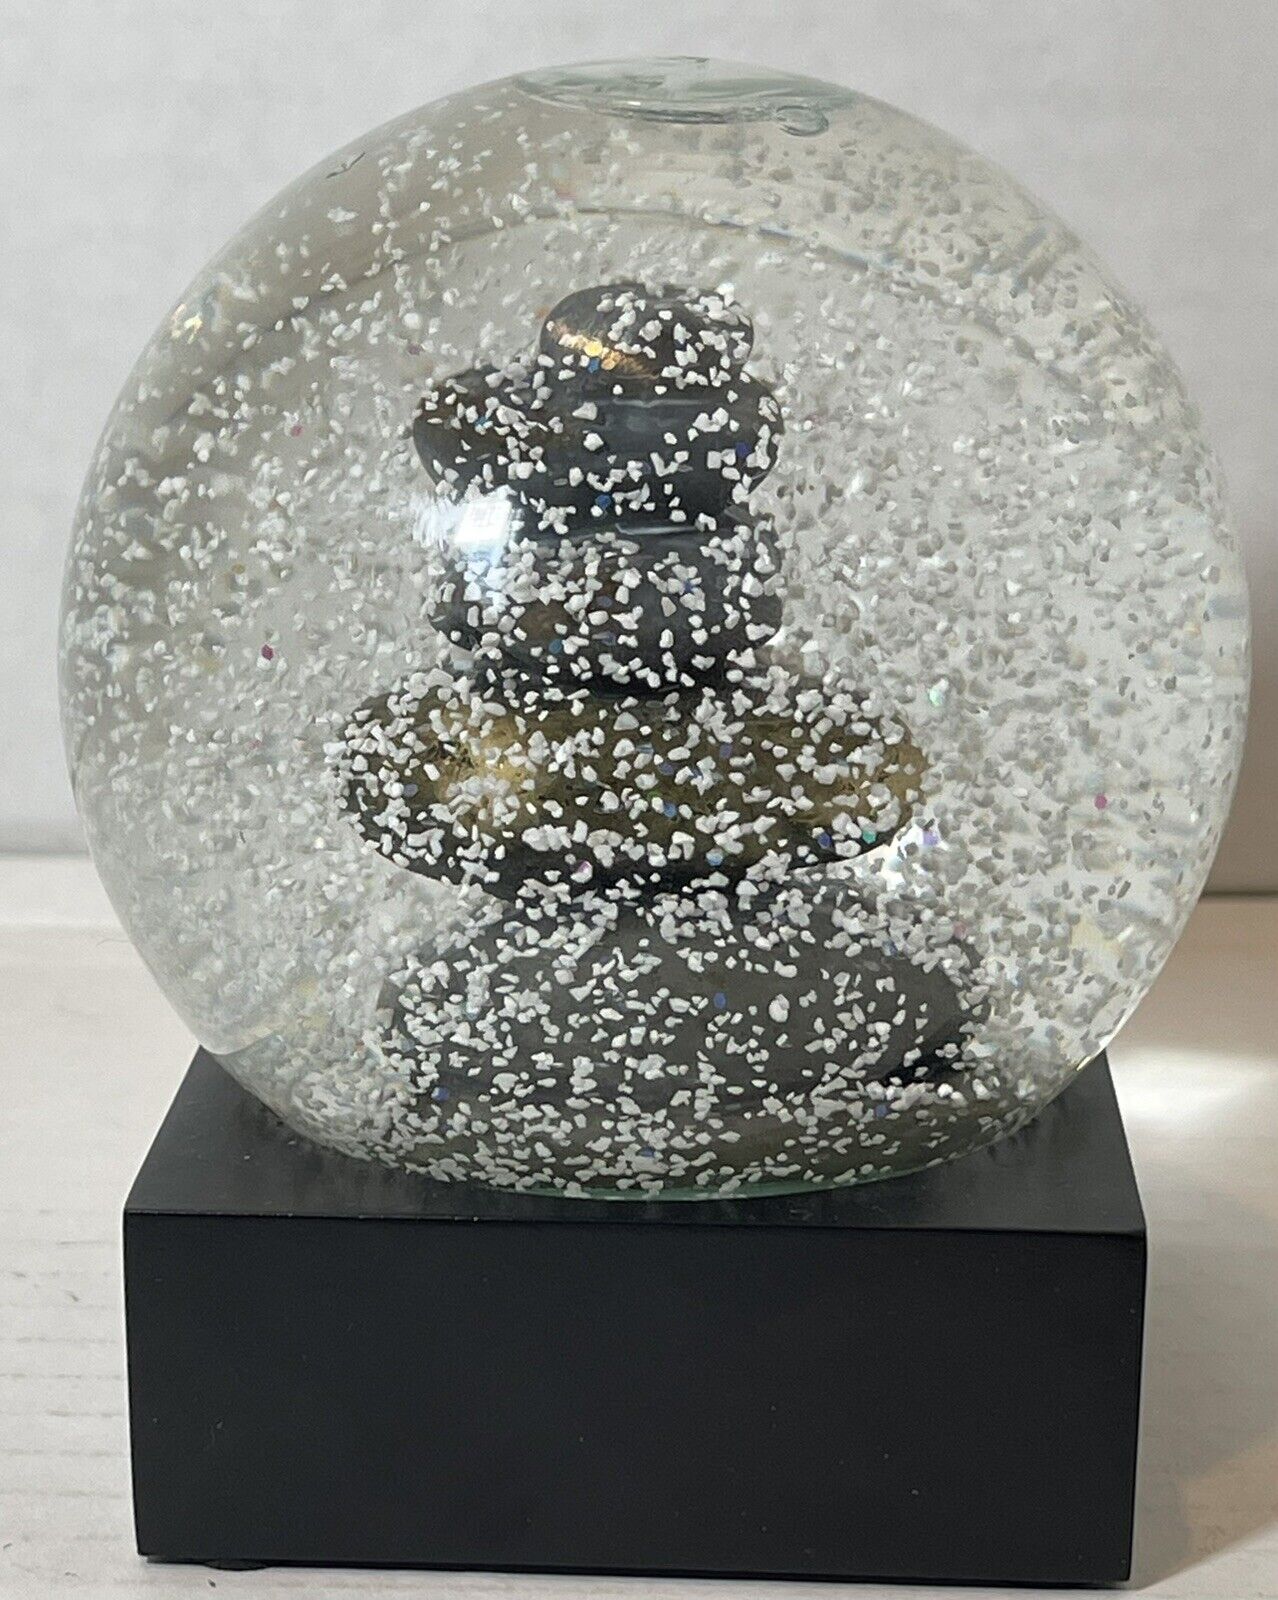 Zen Rocks Snow Globe By Cool Snow Globes